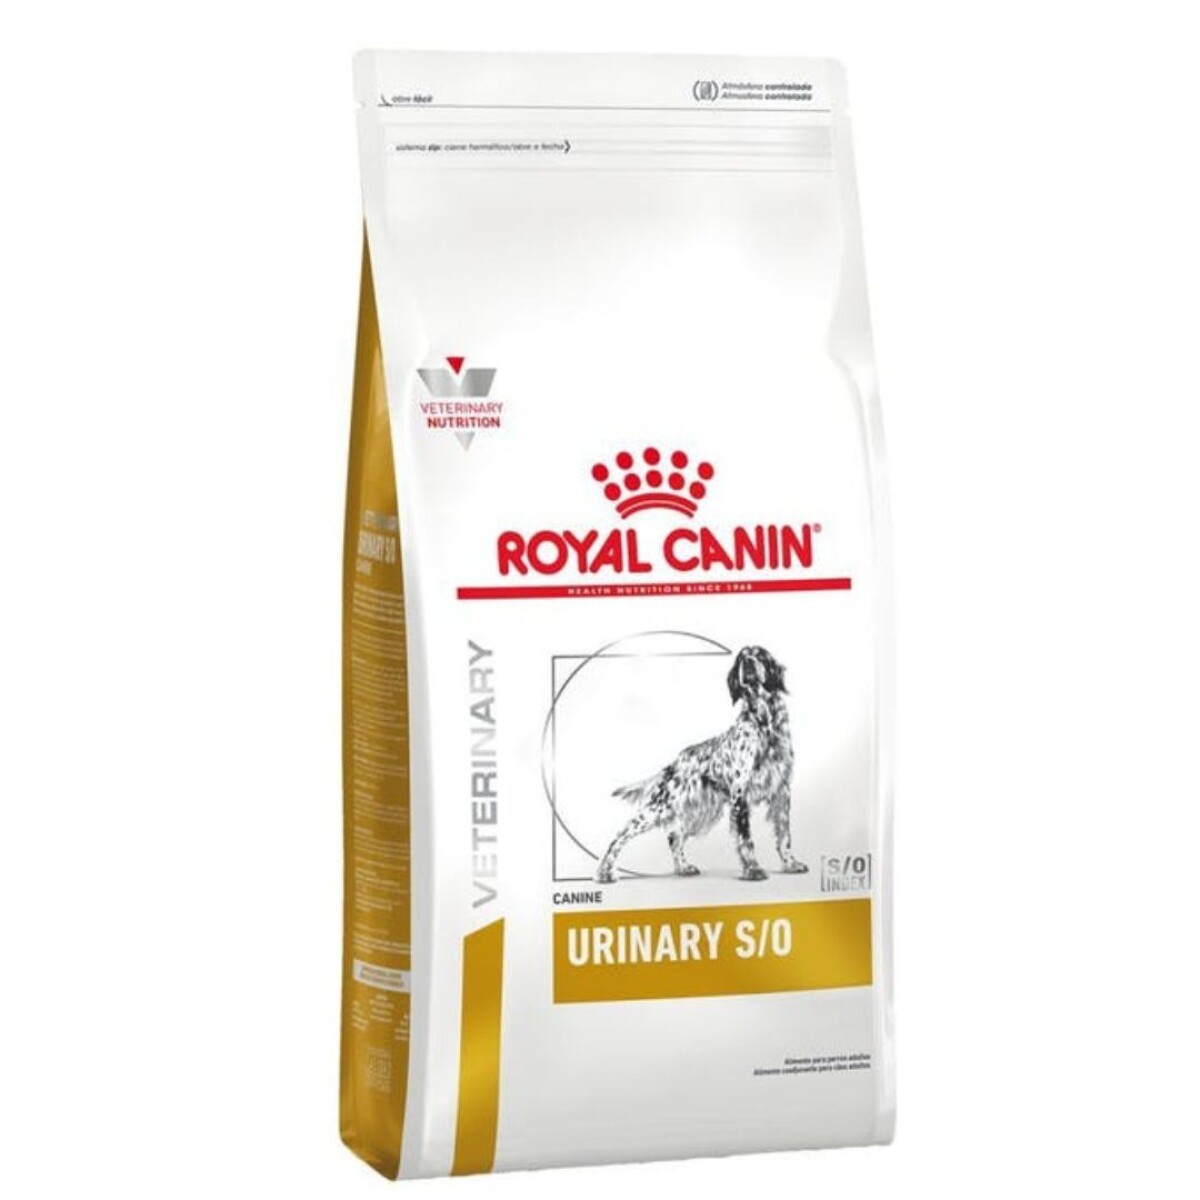 Royal Canin Perro Urinary S/o 1.5 Kg 